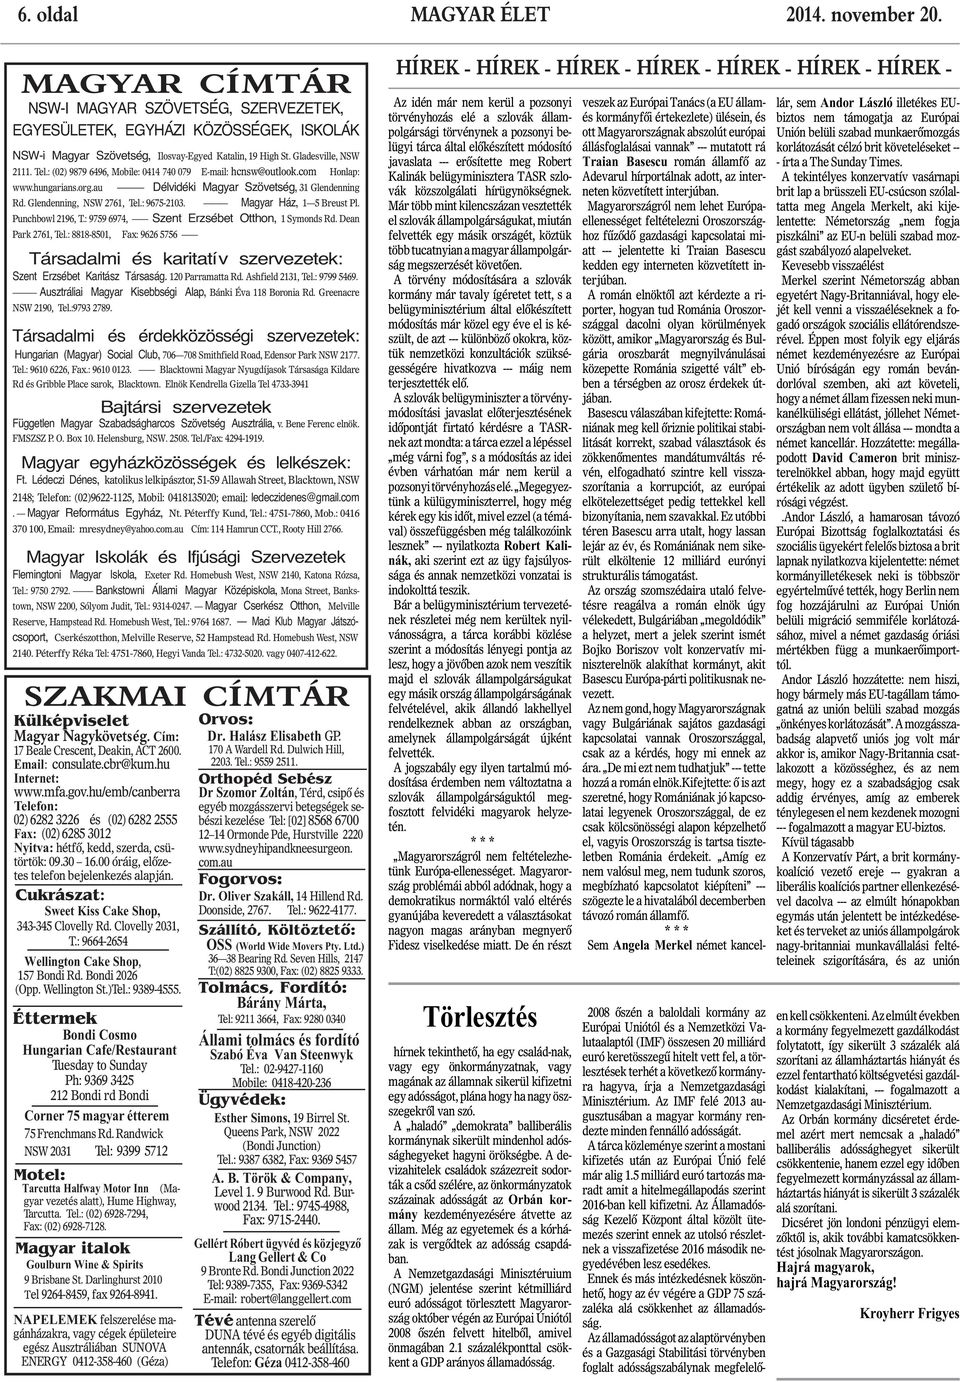 javaslata --- erôsítette meg Robert Kalinák belügyminisztera TASR szlovák közszolgálati hírügynökségnek.